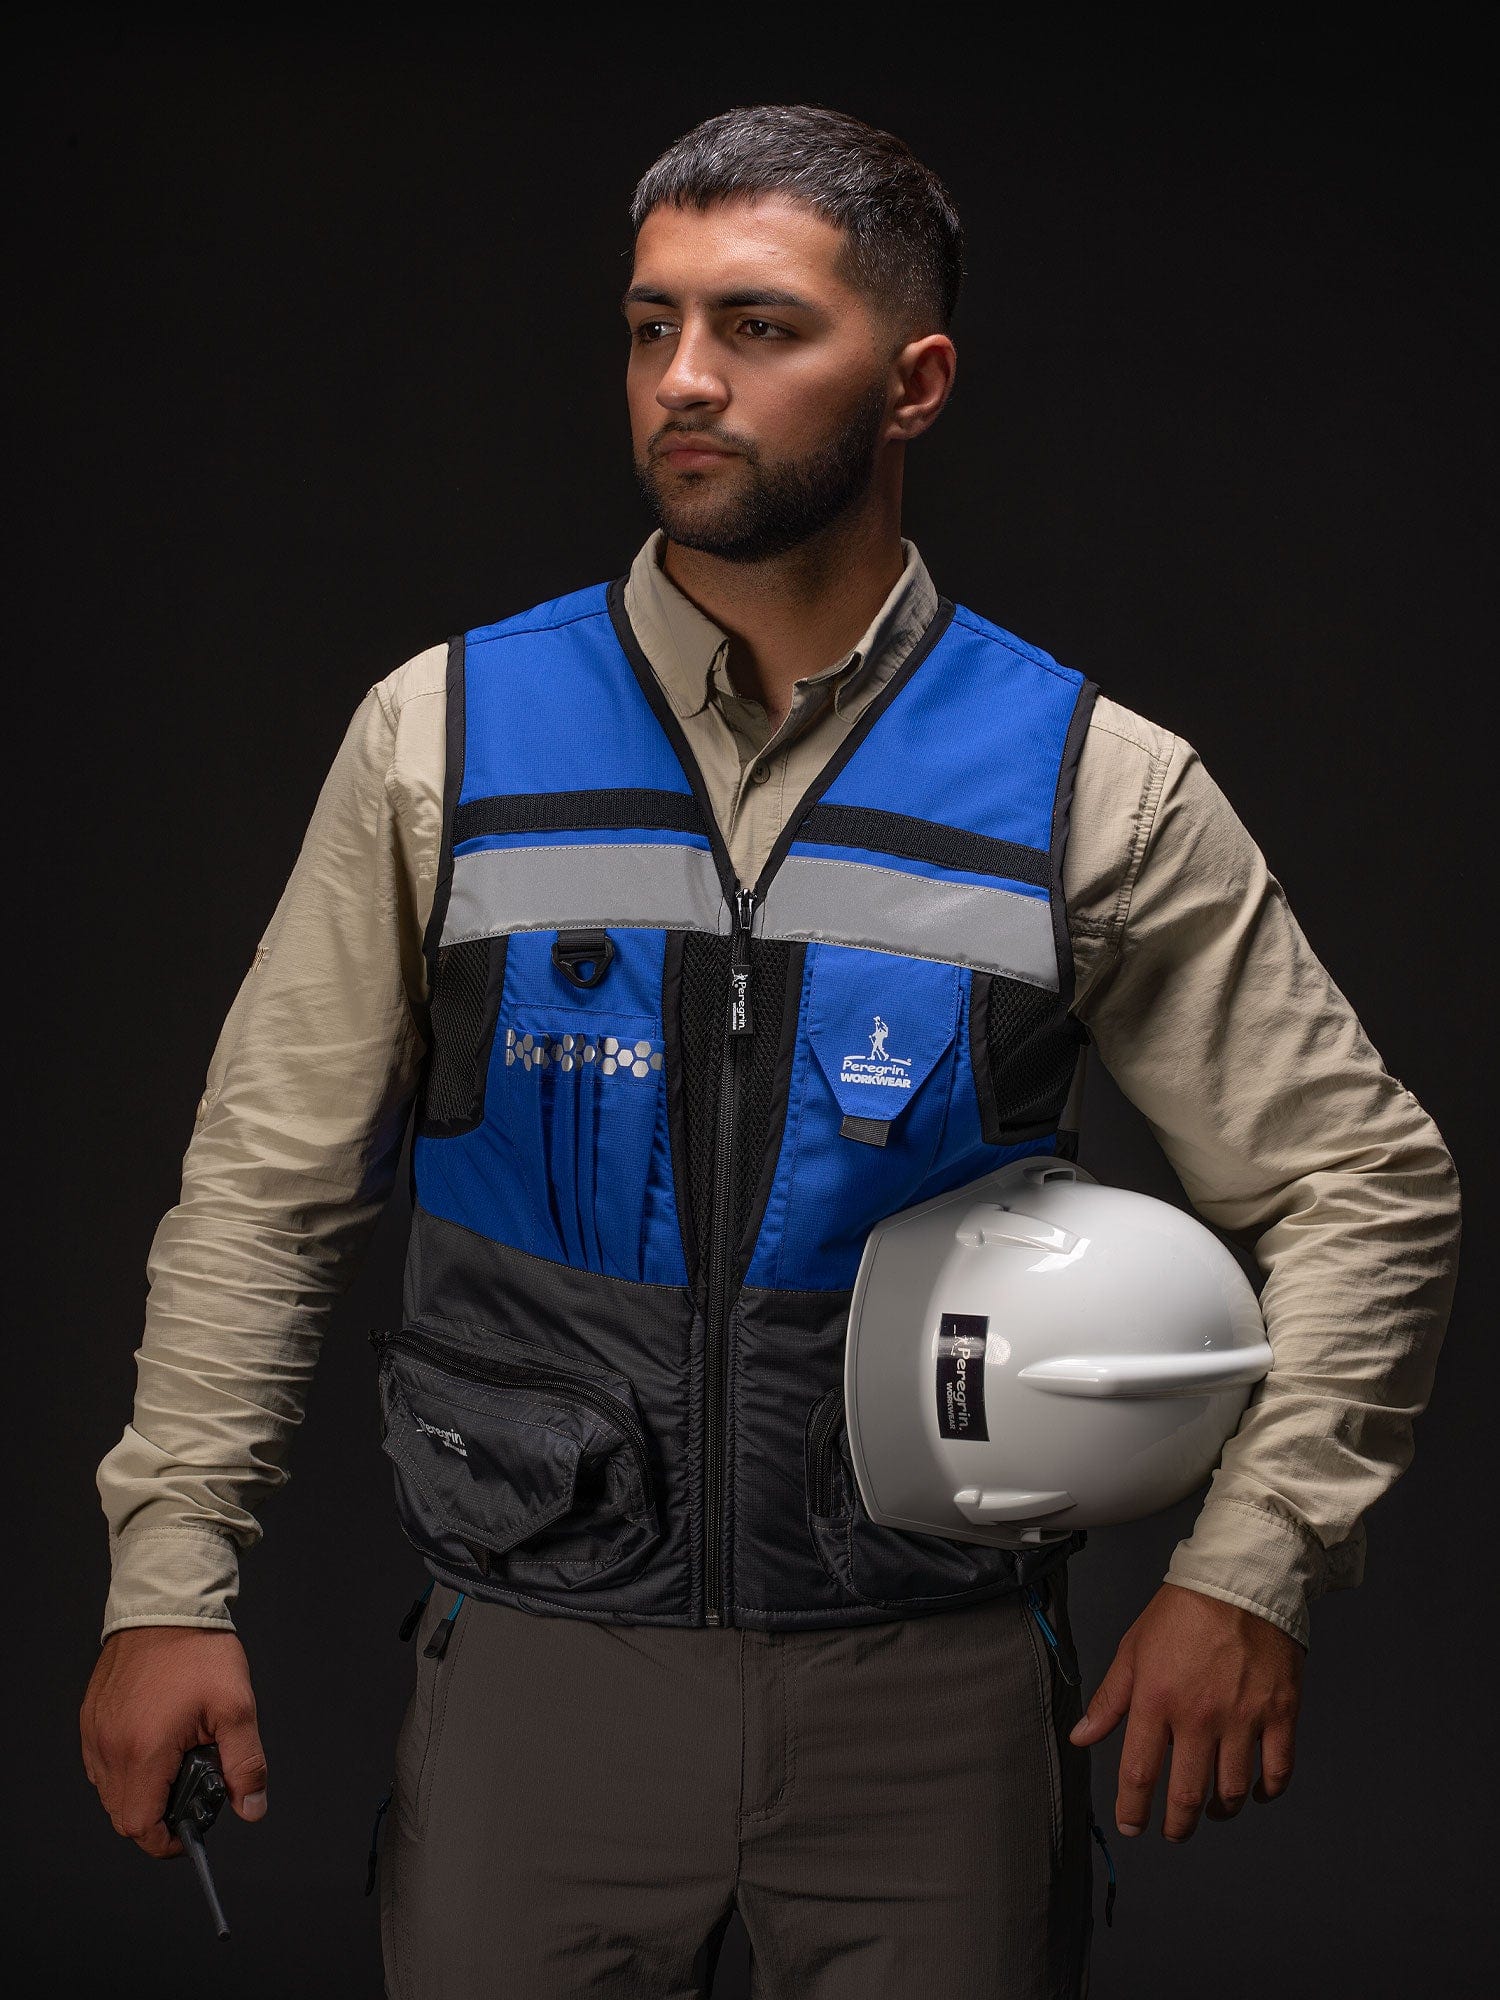 Peregrin Reflective Safety Vest Avg3 Blue